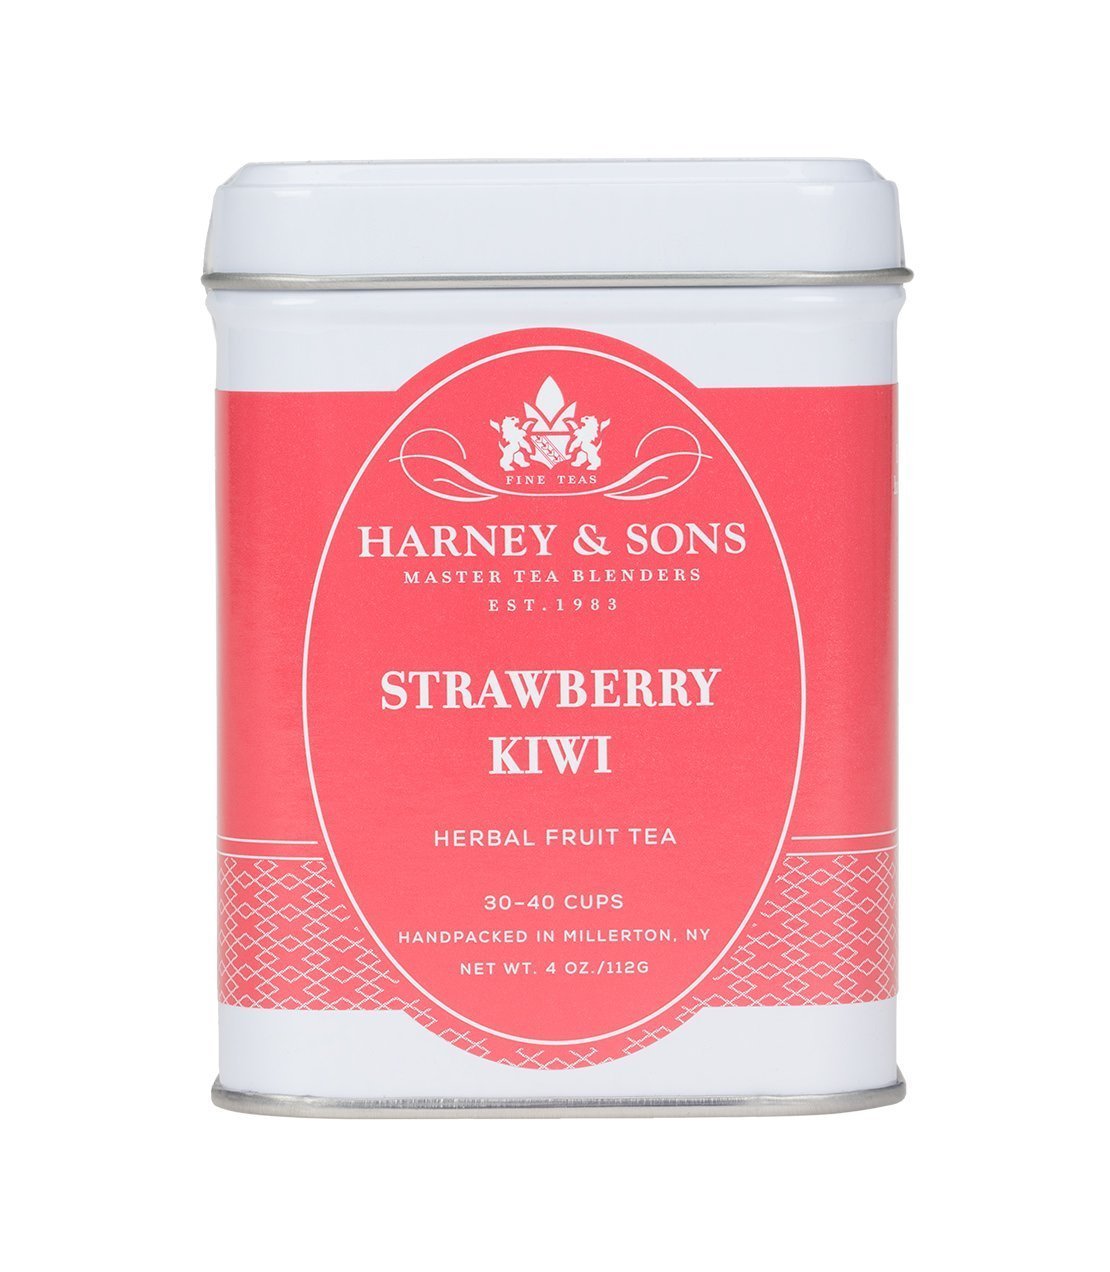 Strawberry & Kiwi